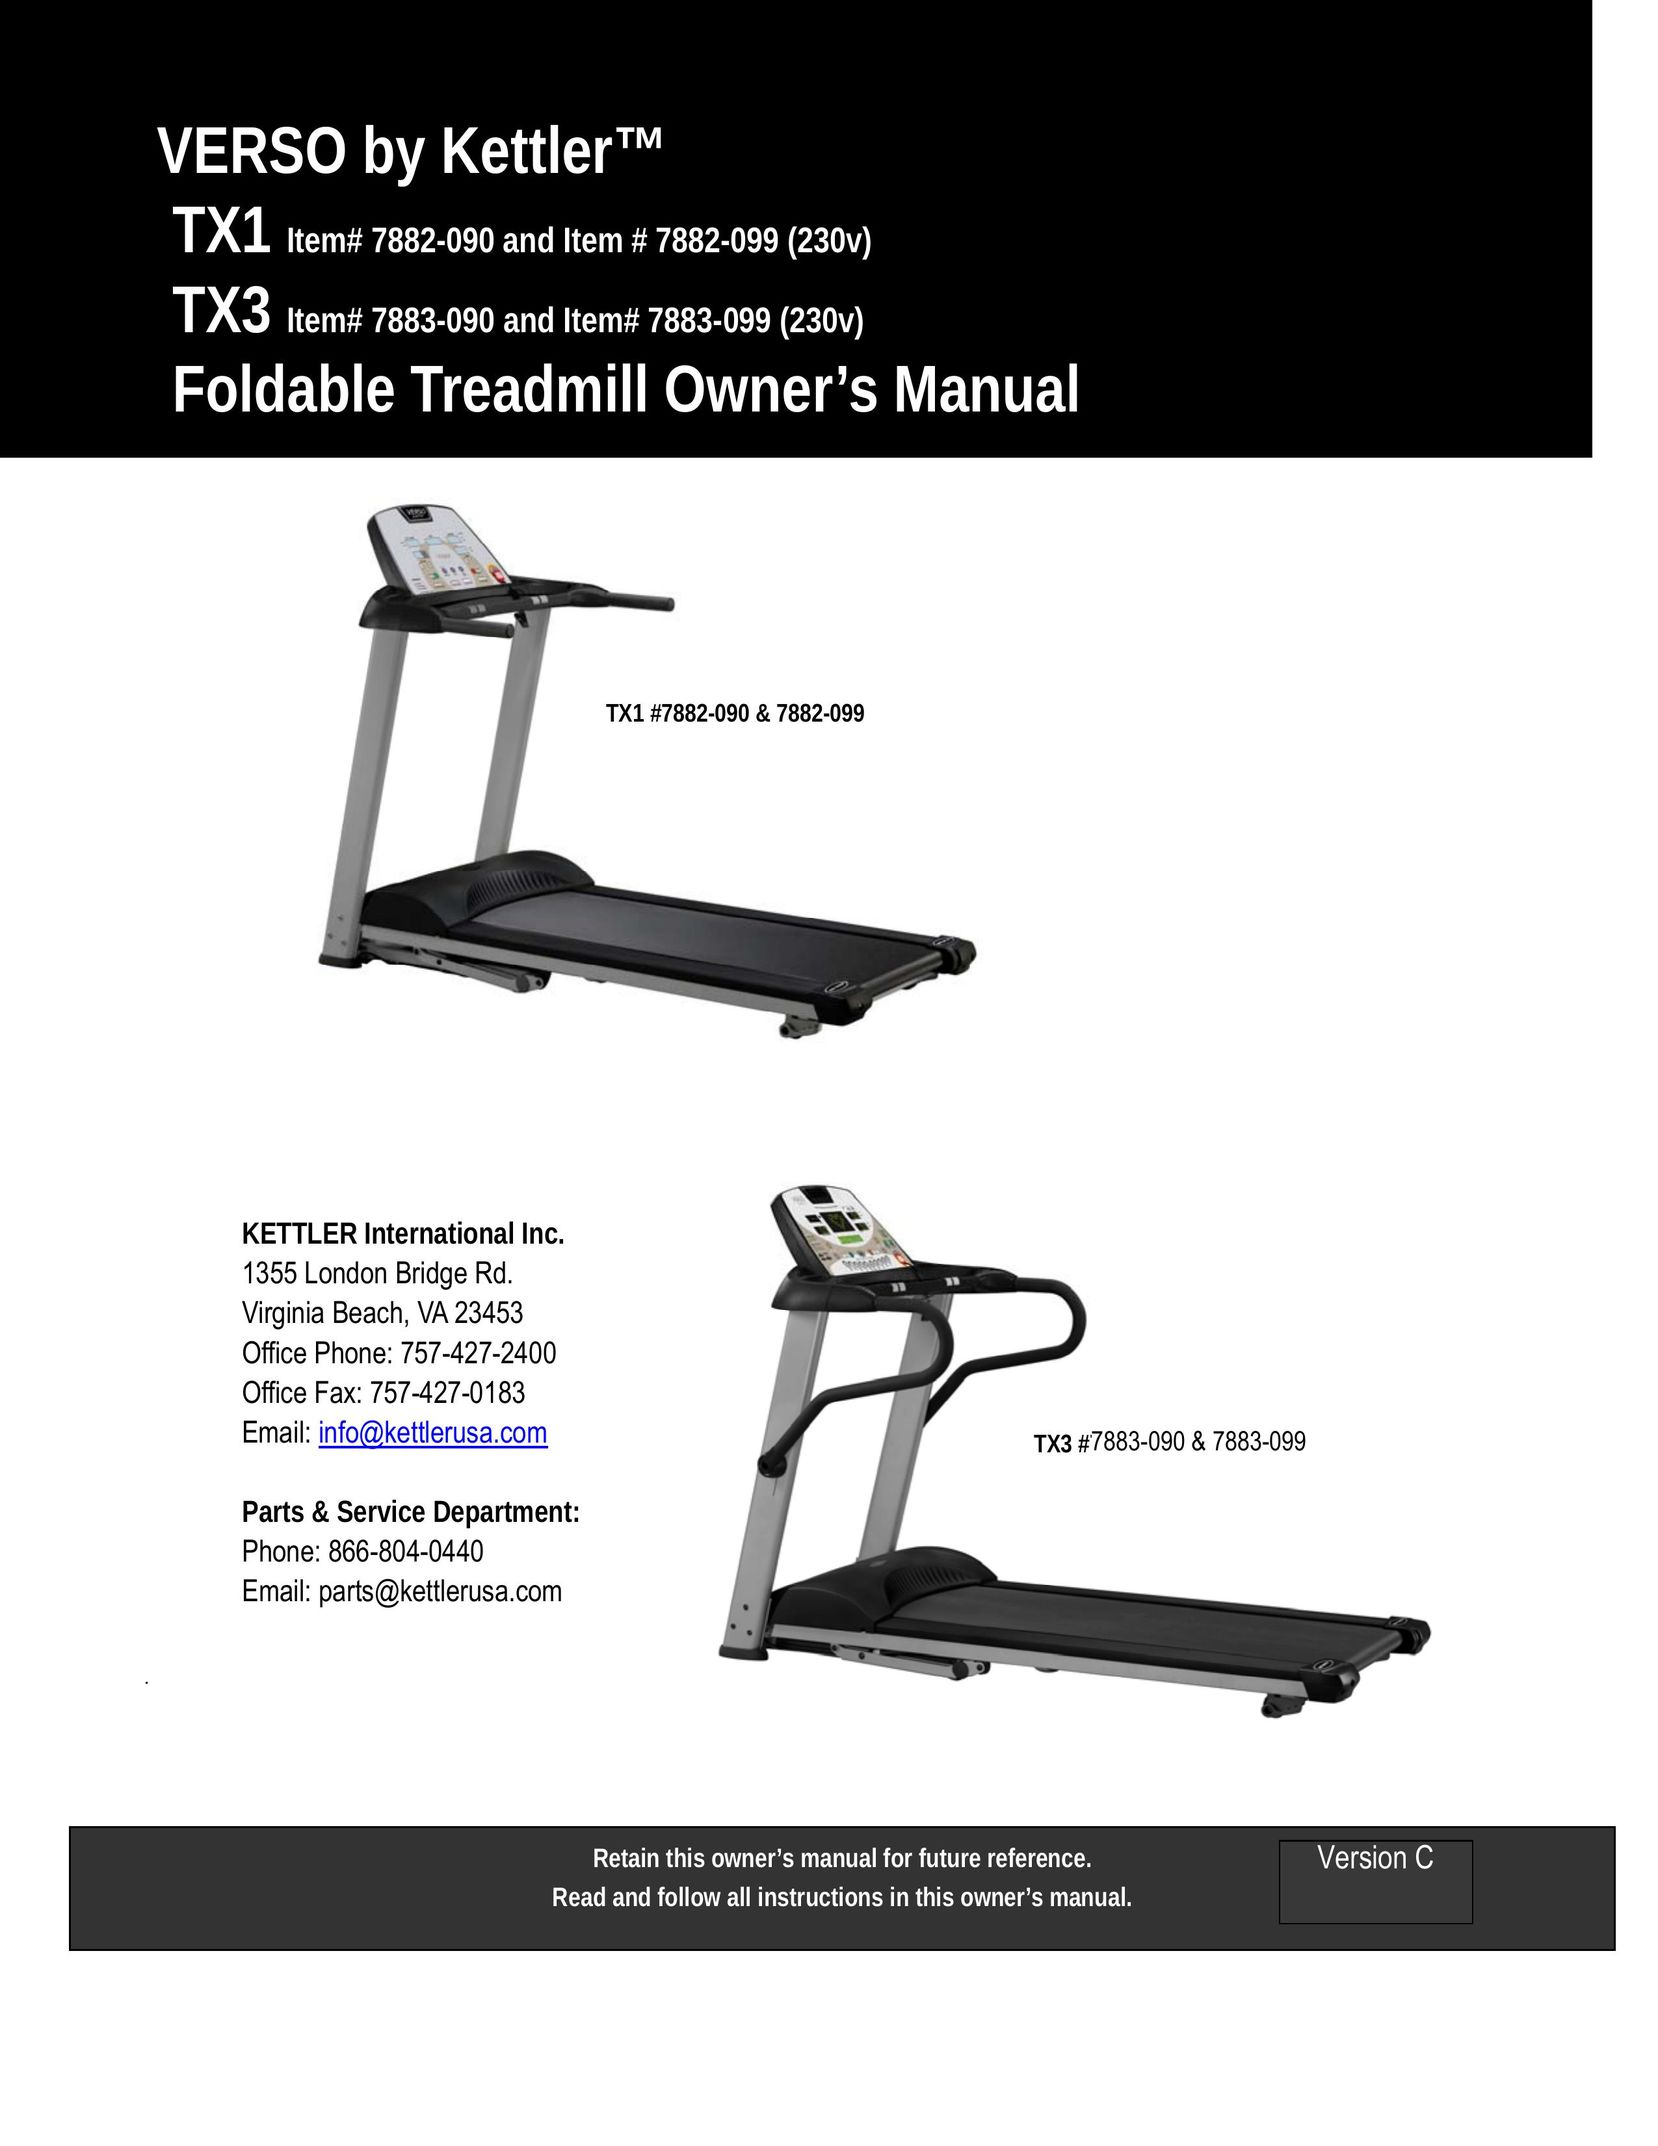 Kettler TX1 Treadmill User Manual